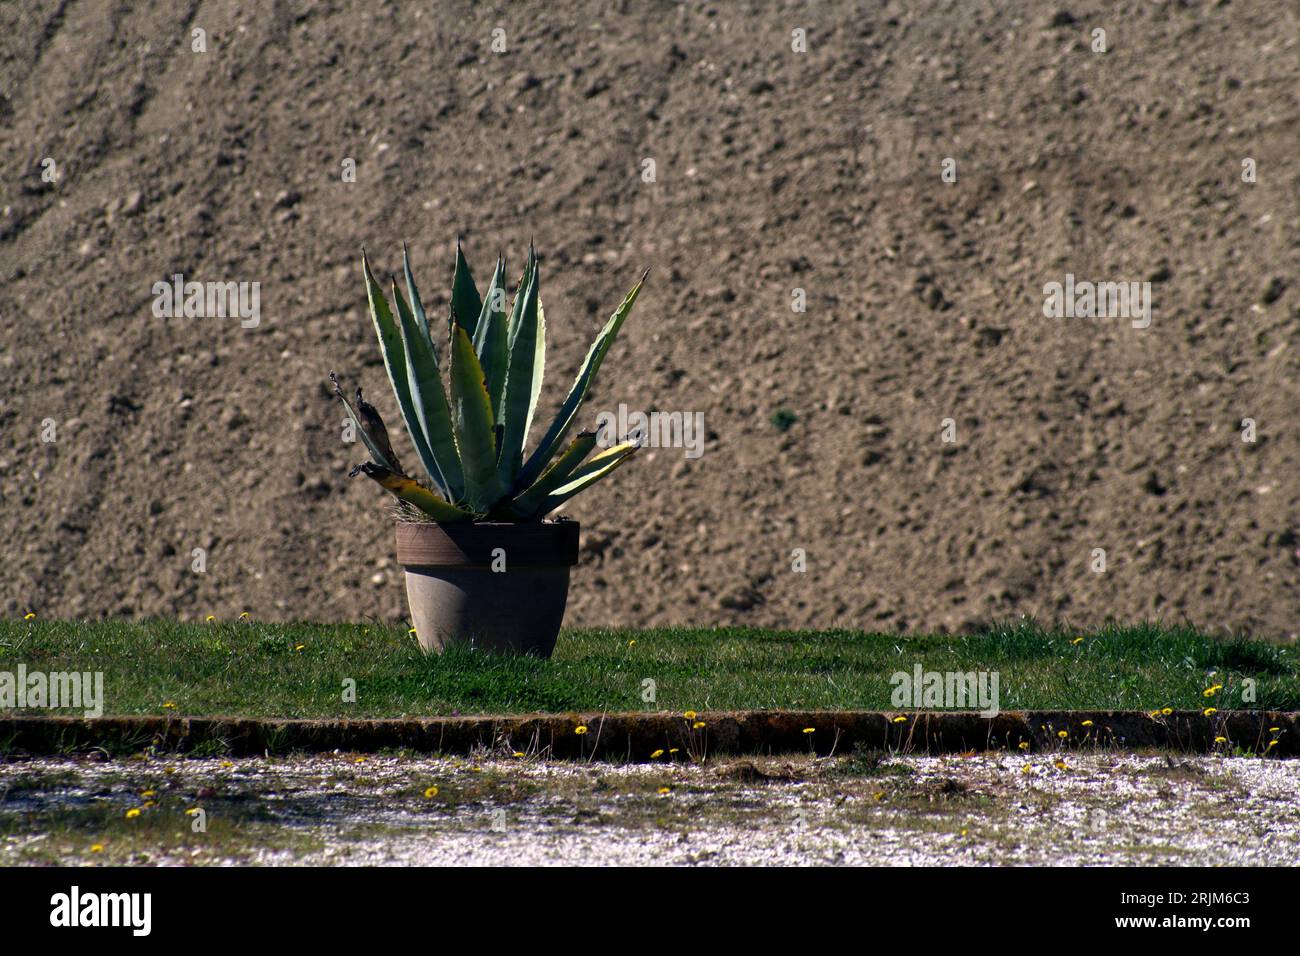 agave in un vaso contro un campo arato Stock Photo